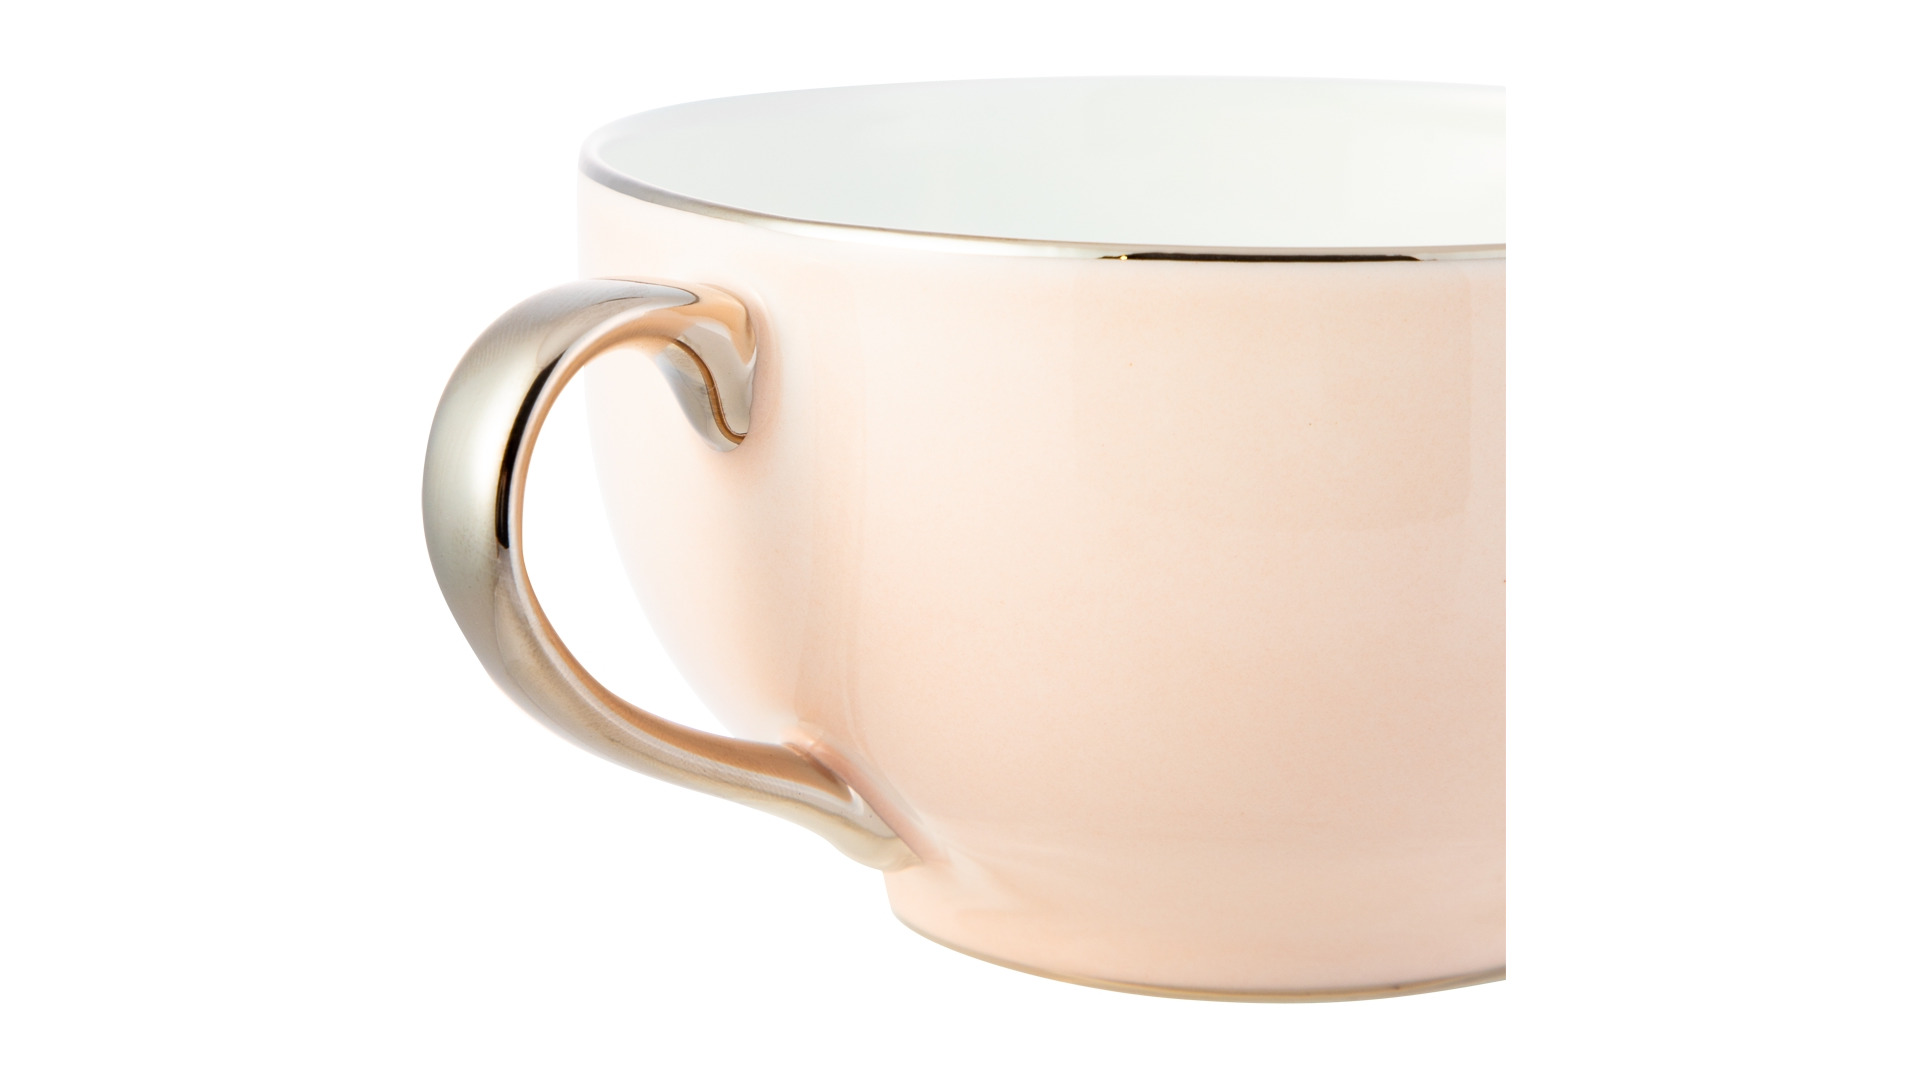 Чашка чайная с блюдцем Legle Под солнцем 280 мл, фарфор, бледно-розовая, платиновый кант